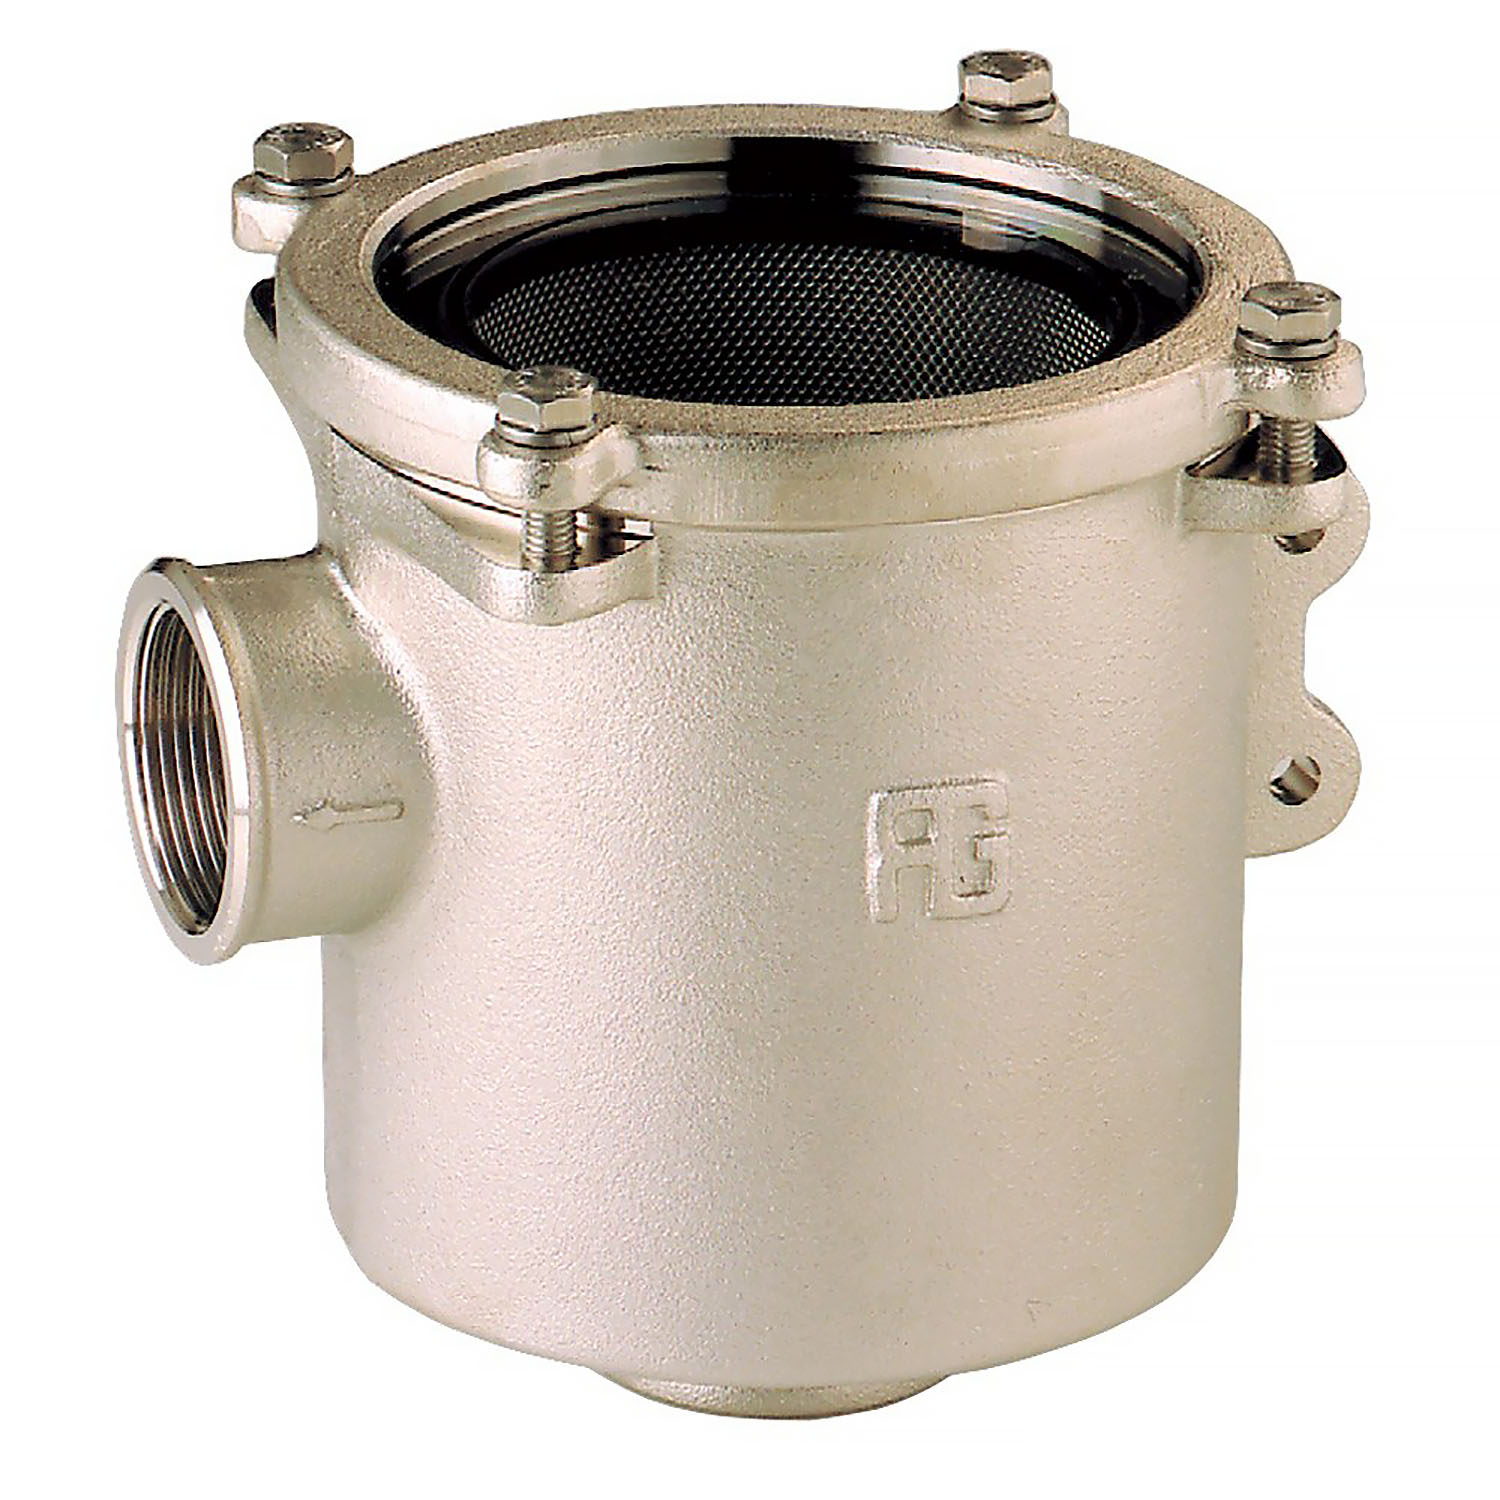 Фильтр водяной системы охлаждения двигателя Guidi Marine Ionio 1164 1164#220011 3" 58400-184000л/час из никелированной латуни с крышкой из поликарбоната